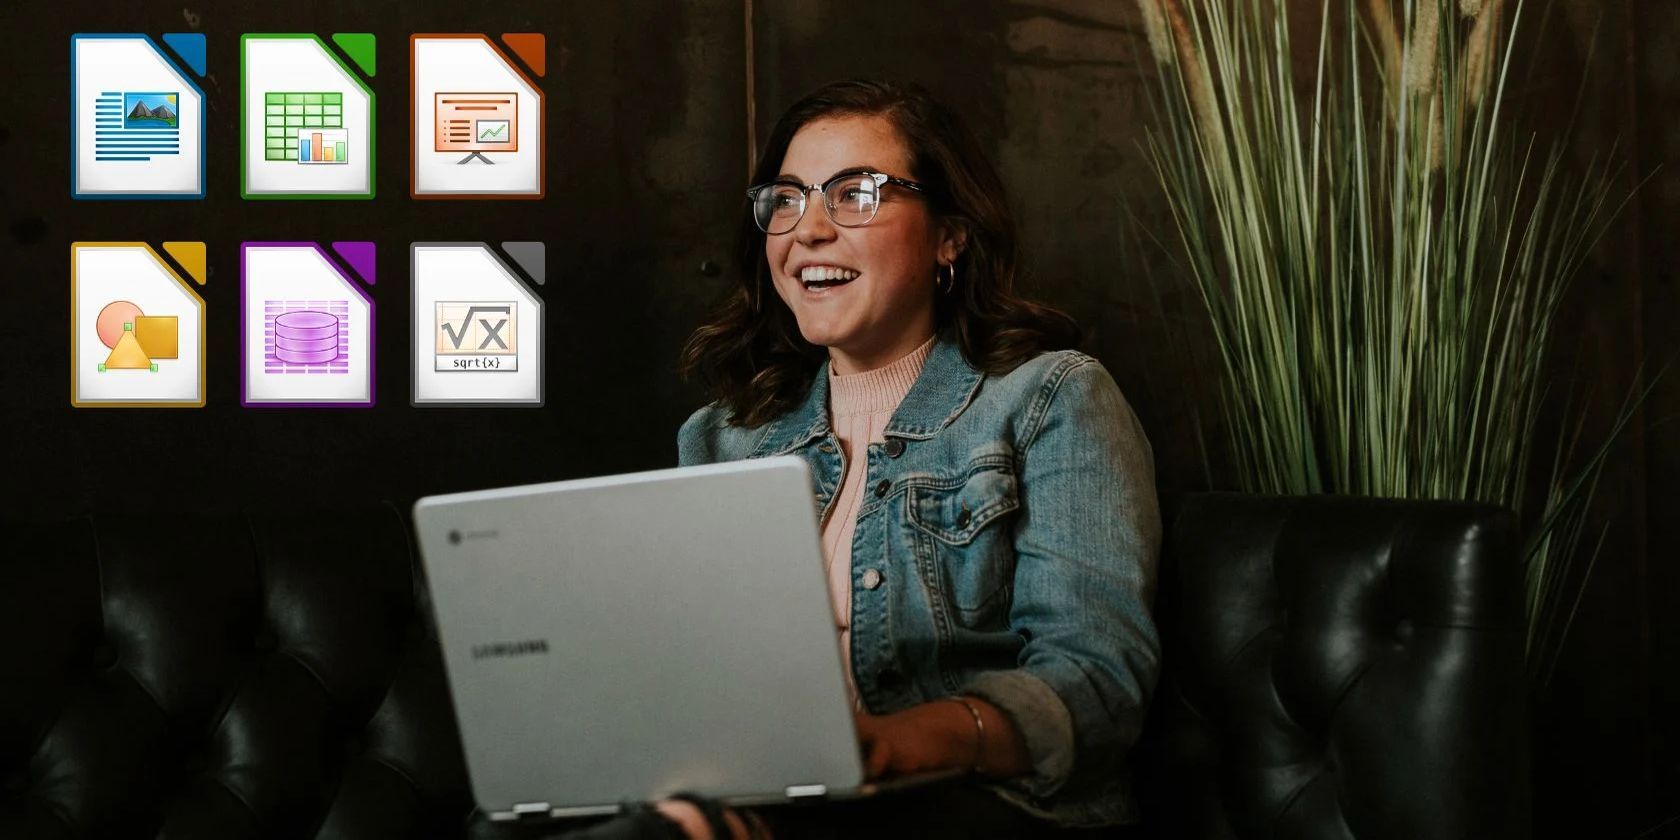 Woman happy over LibreOffice programs